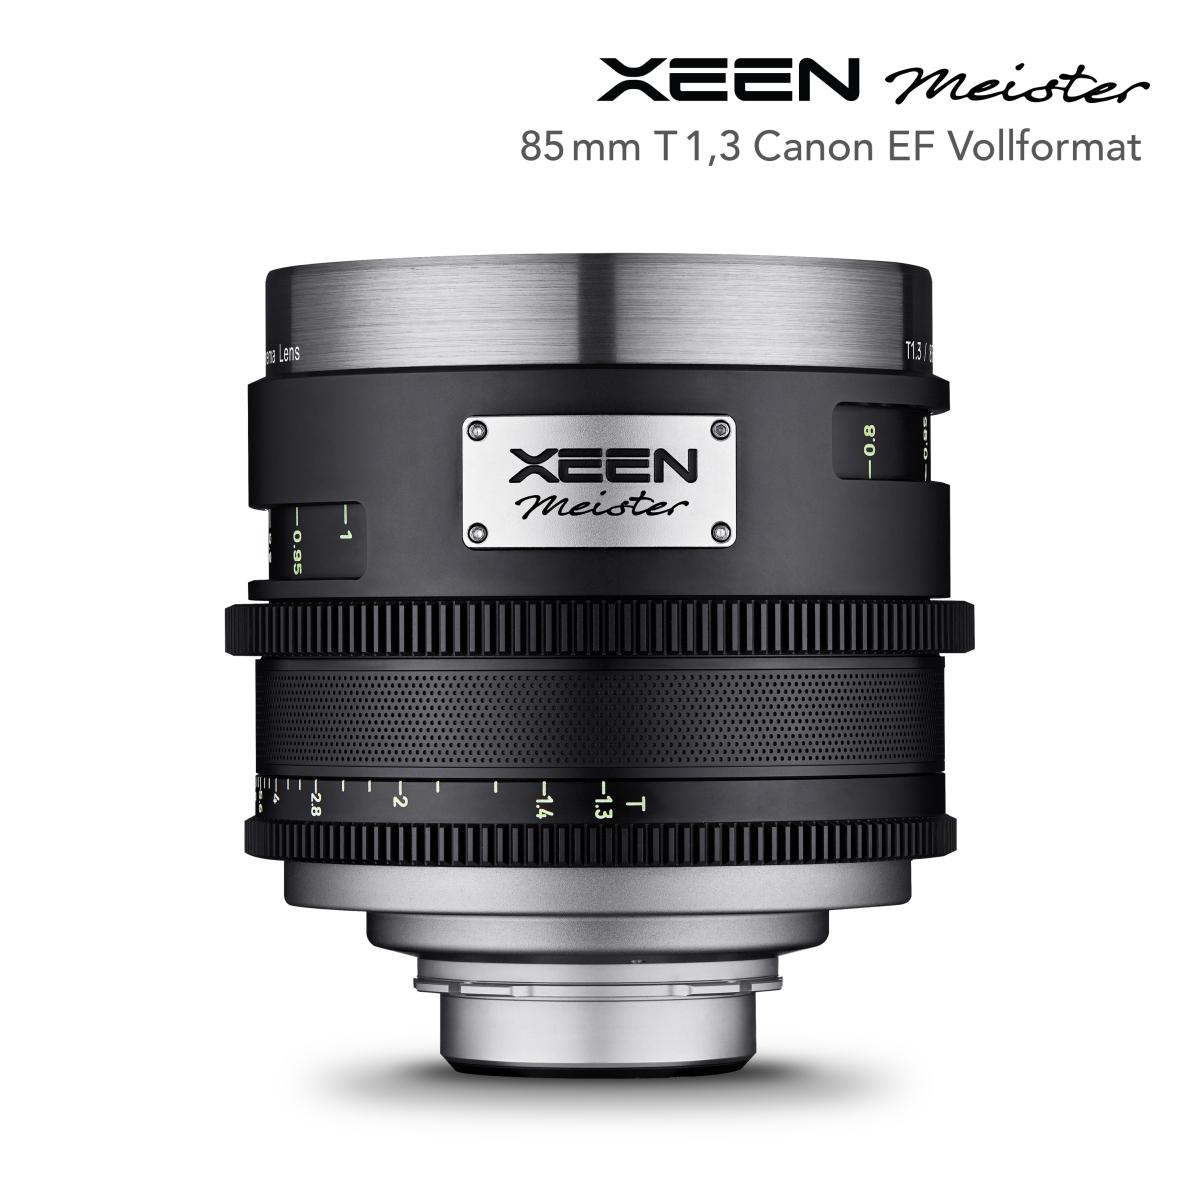 XEEN Meister 85mm T1.3 Canon EF Vollformat